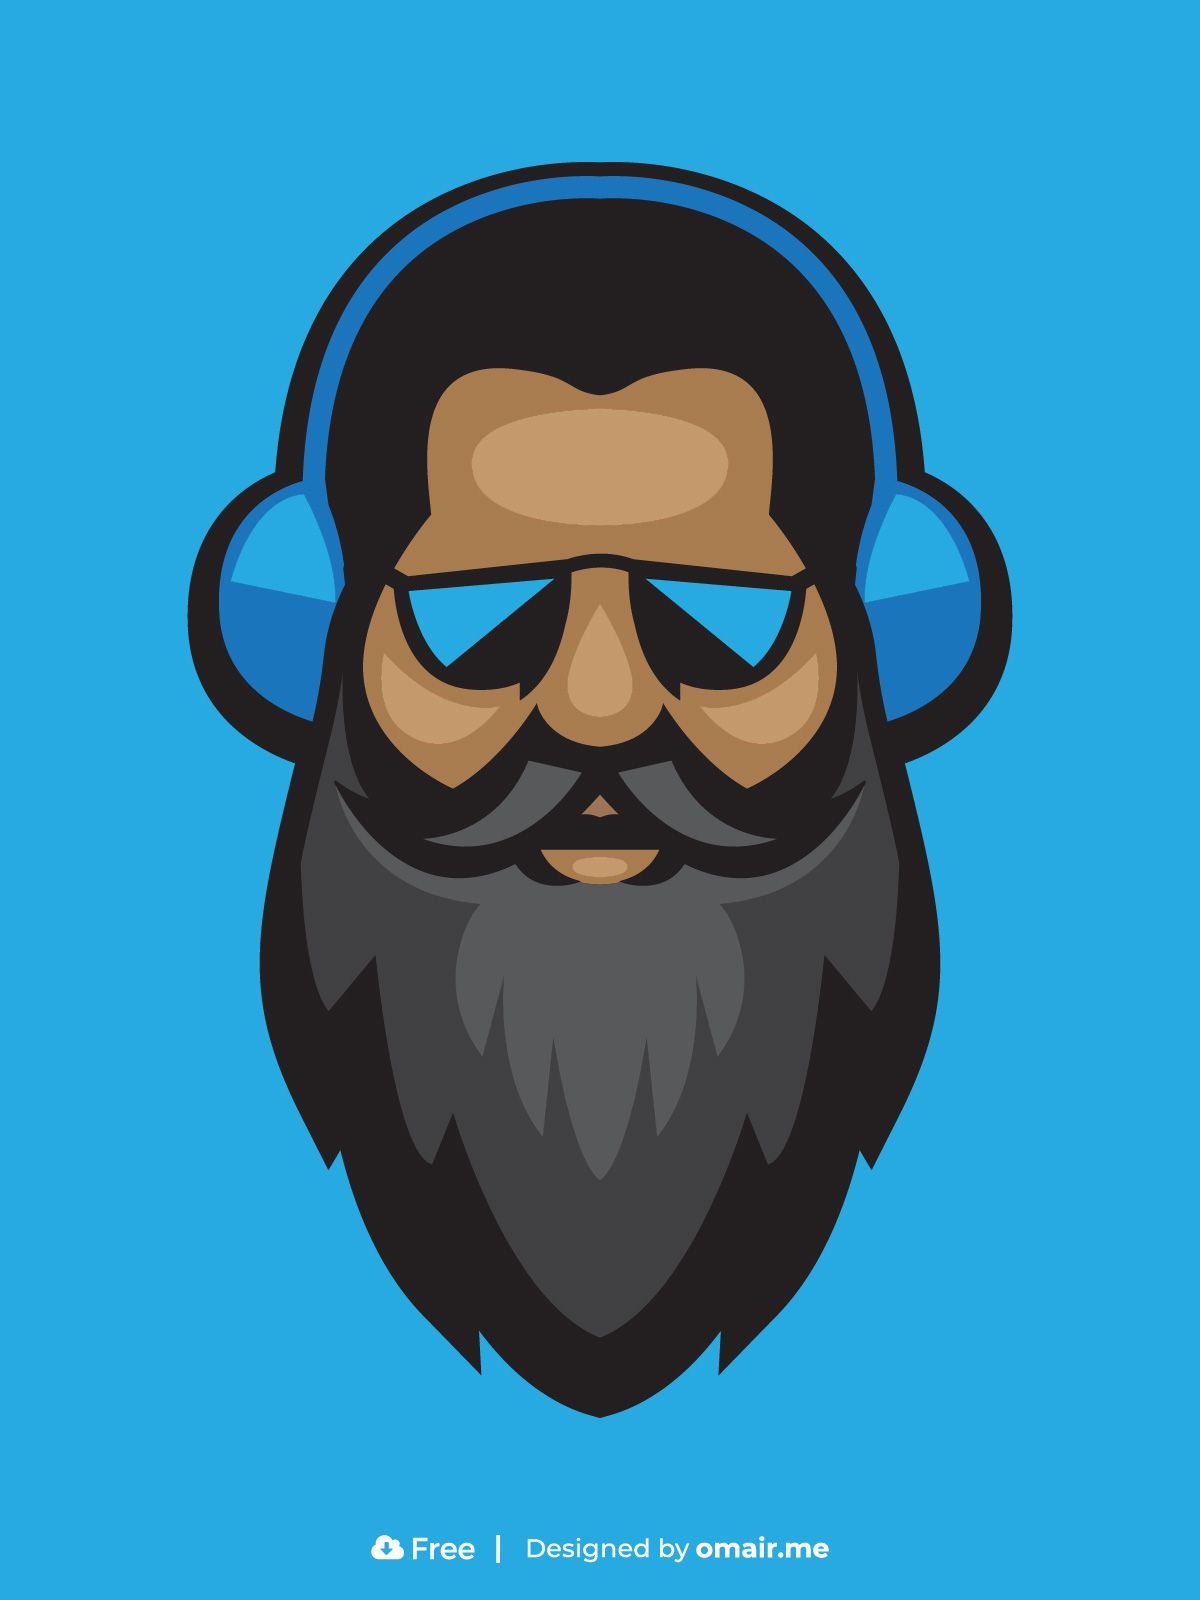 Gaming Beard Mascot Logo Free Download